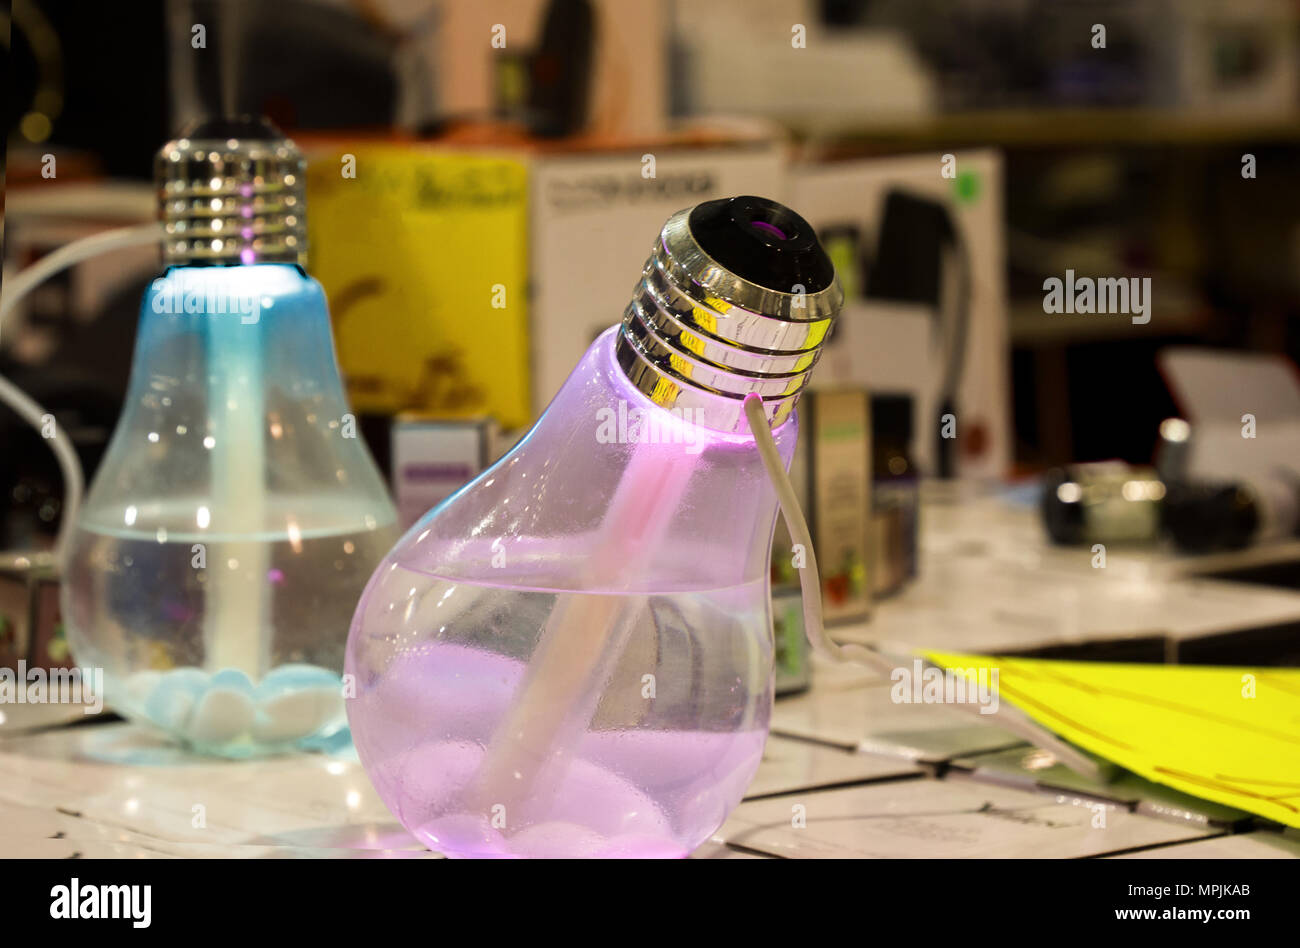 Farbige Vaporizer wie eine Glühbirne Aromen im Zimmer zu diffusen geformt  Stockfotografie - Alamy